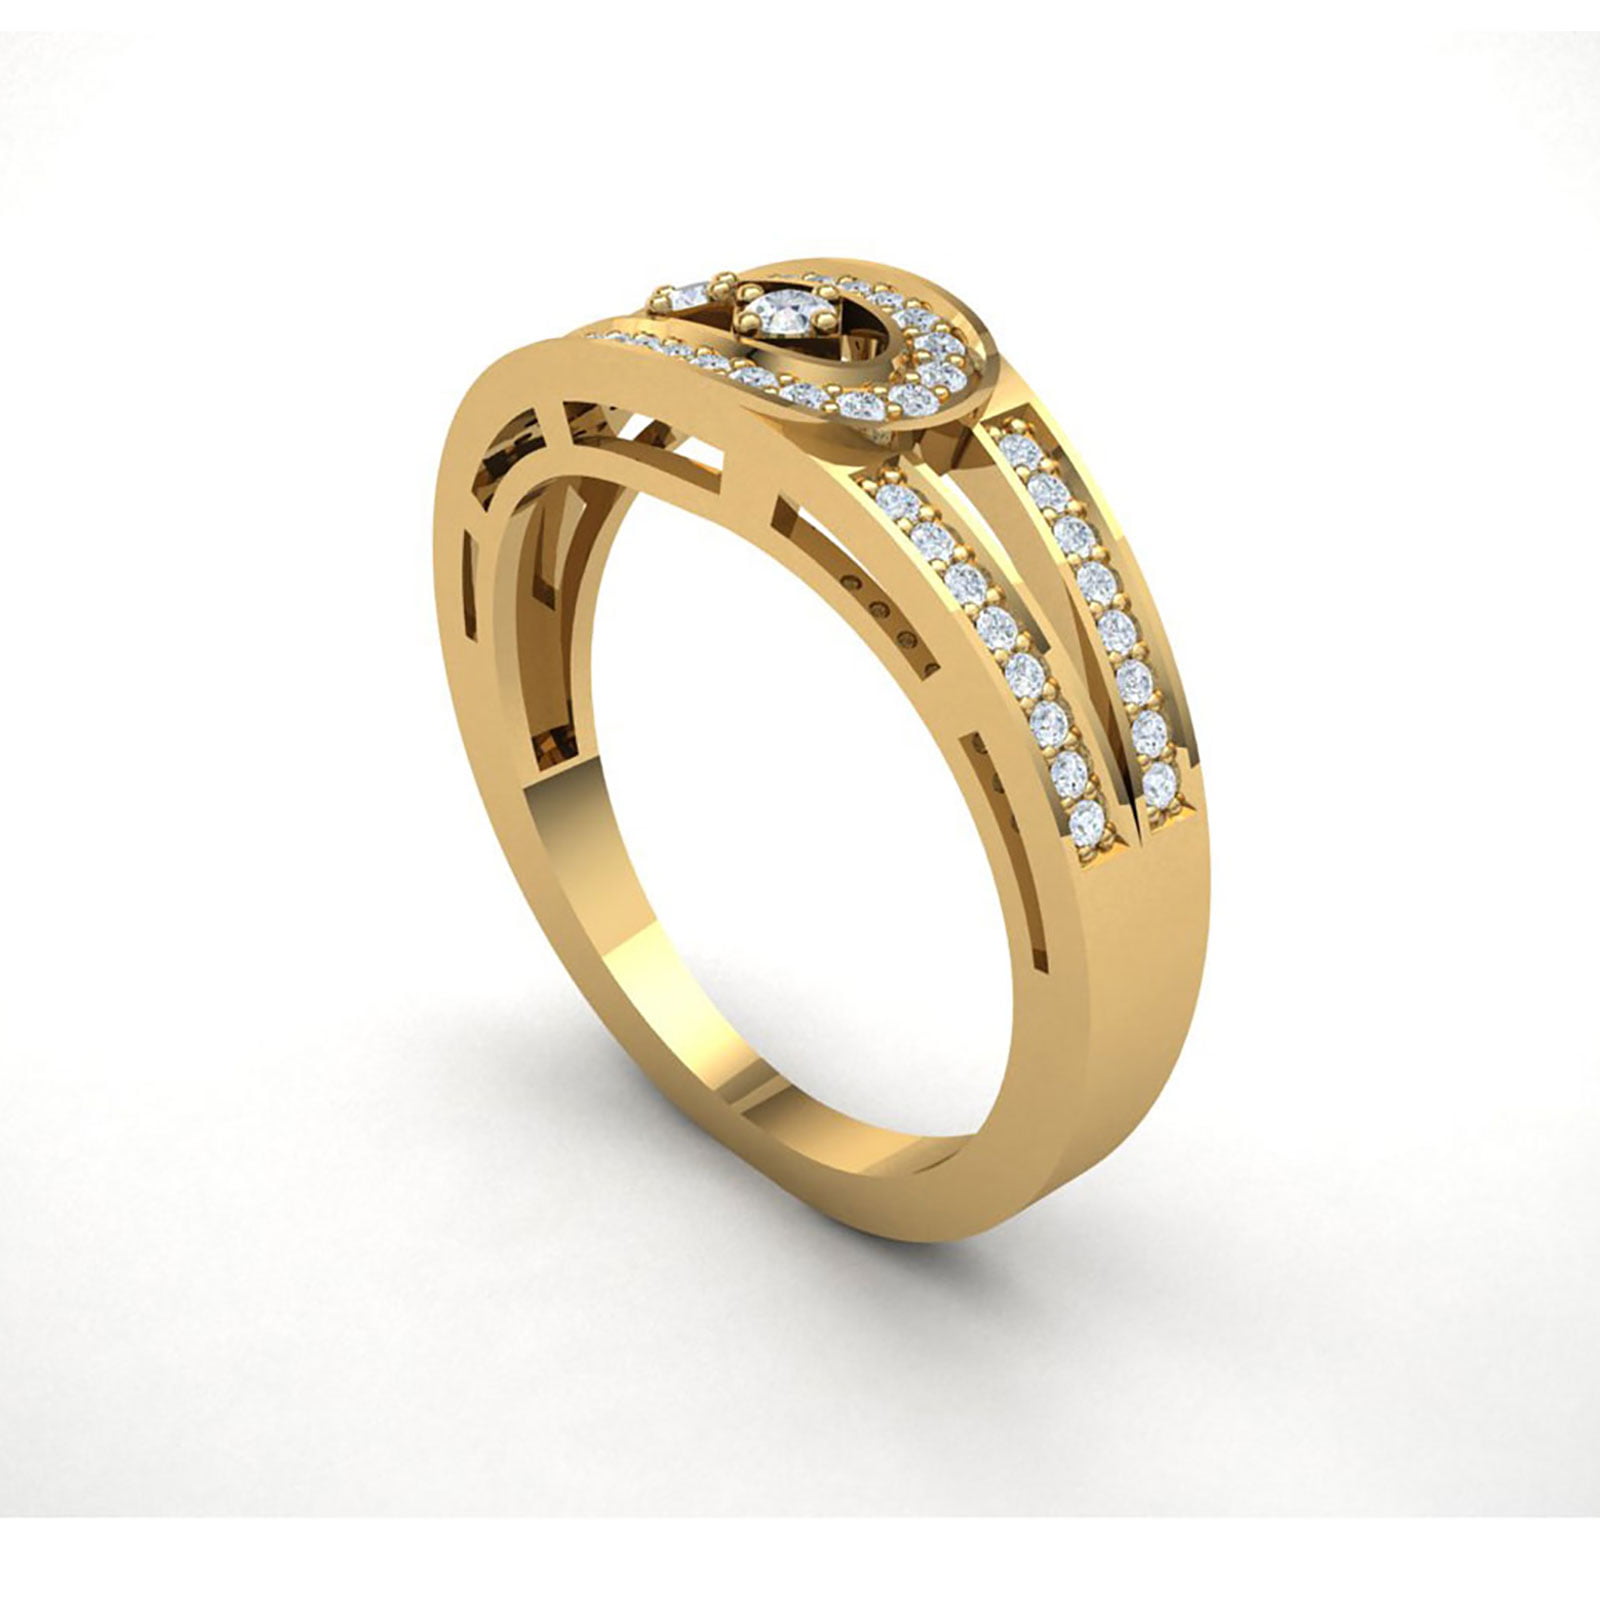 14k Gold Polished Ring - 2.5 Grams - Size 7.00 - Walmart.com